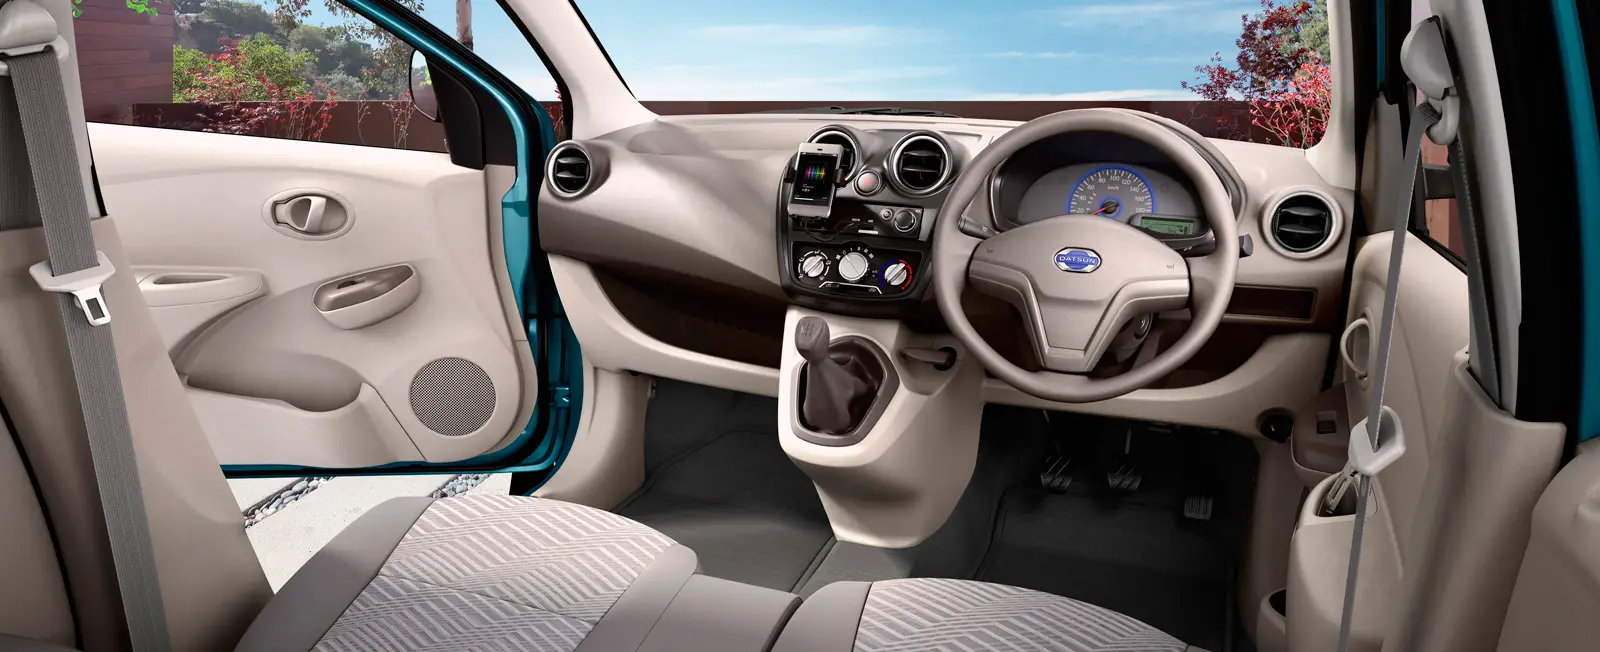 Datsun Go T Option Interior